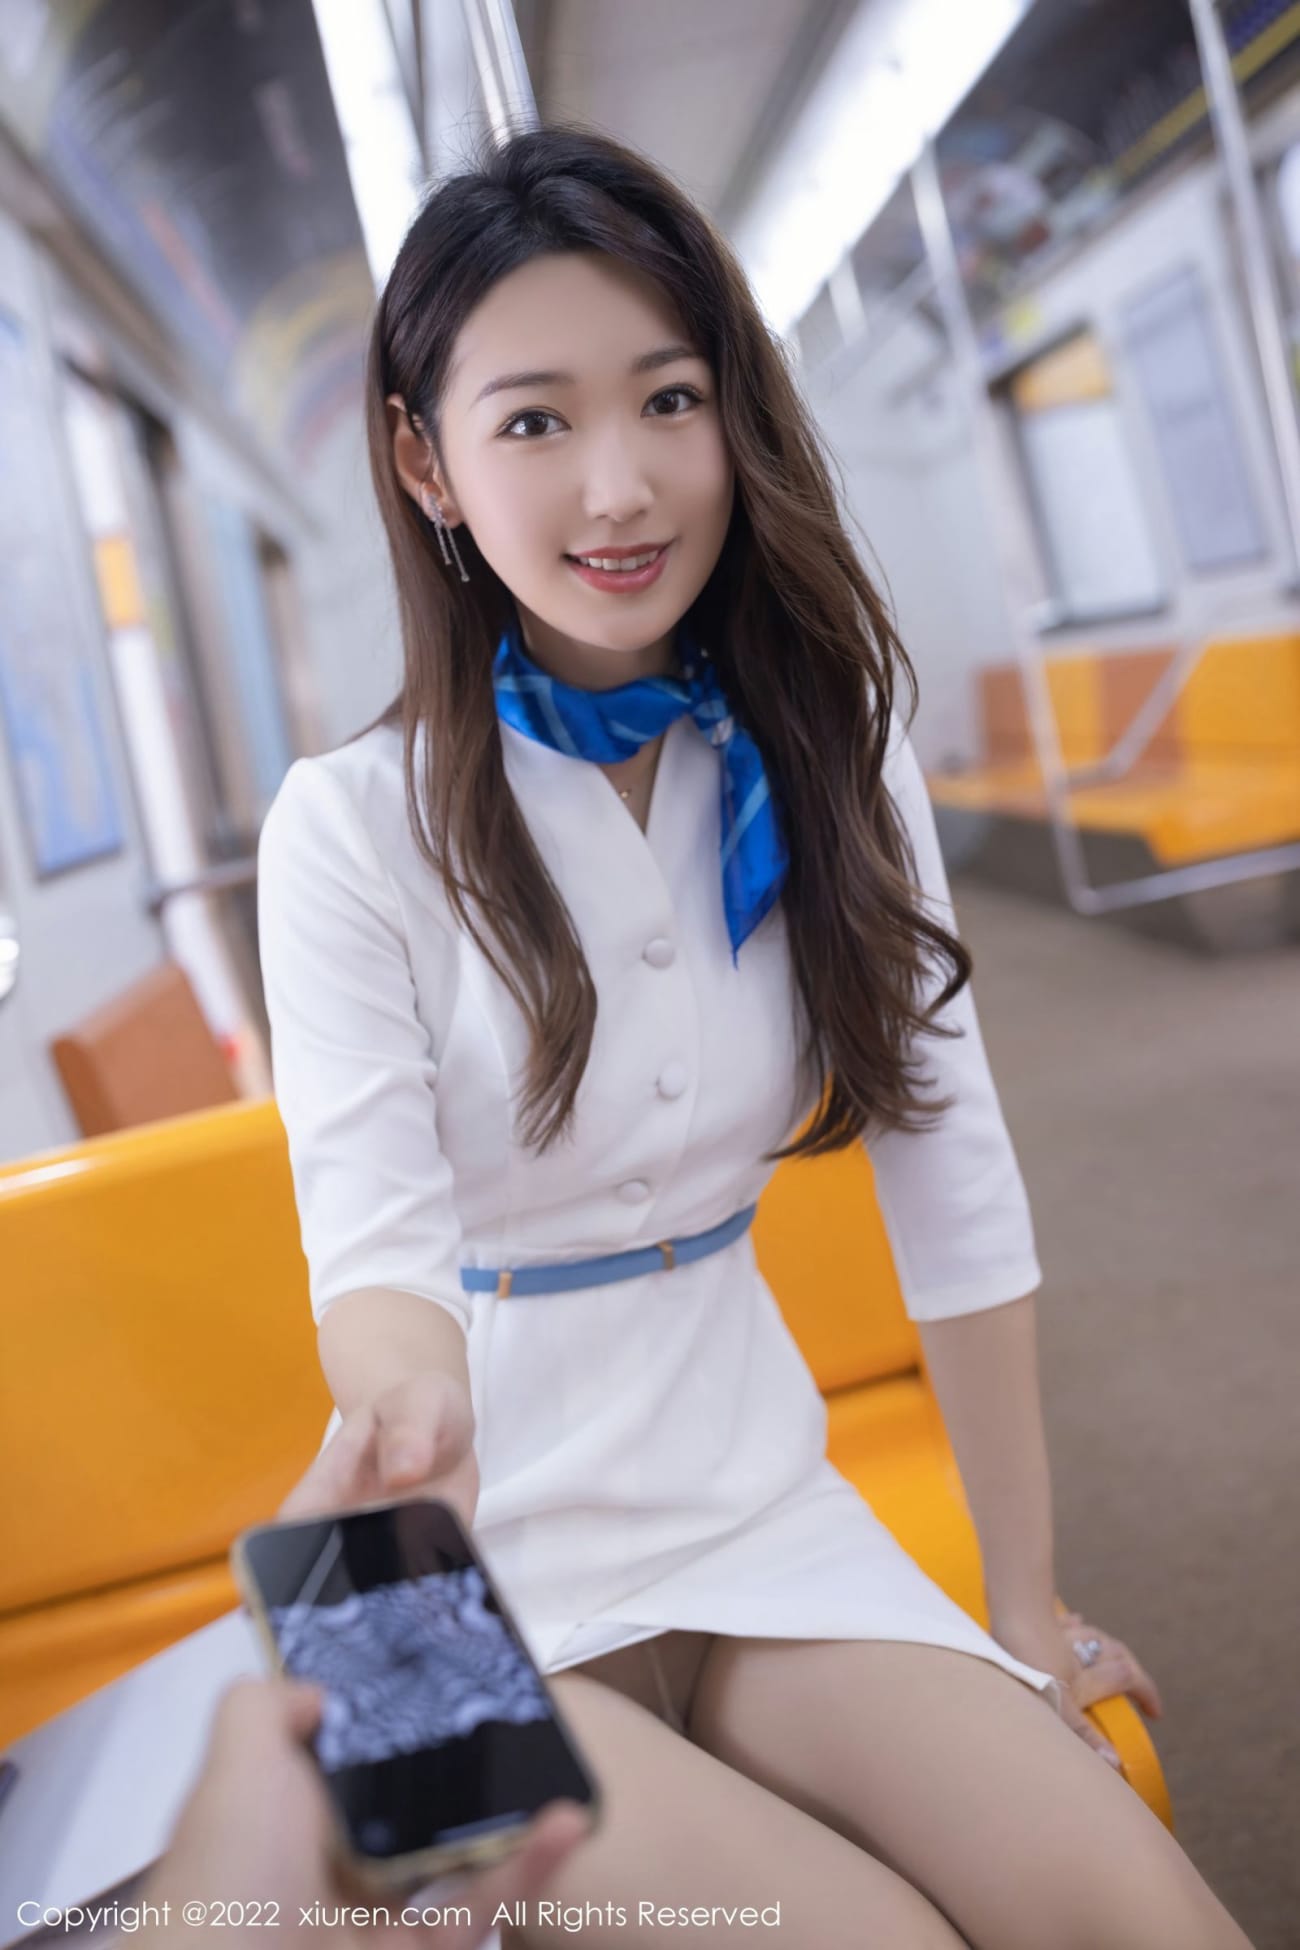 美女模特唐安琪白色制服丝袜系列地铁车厢场景写真